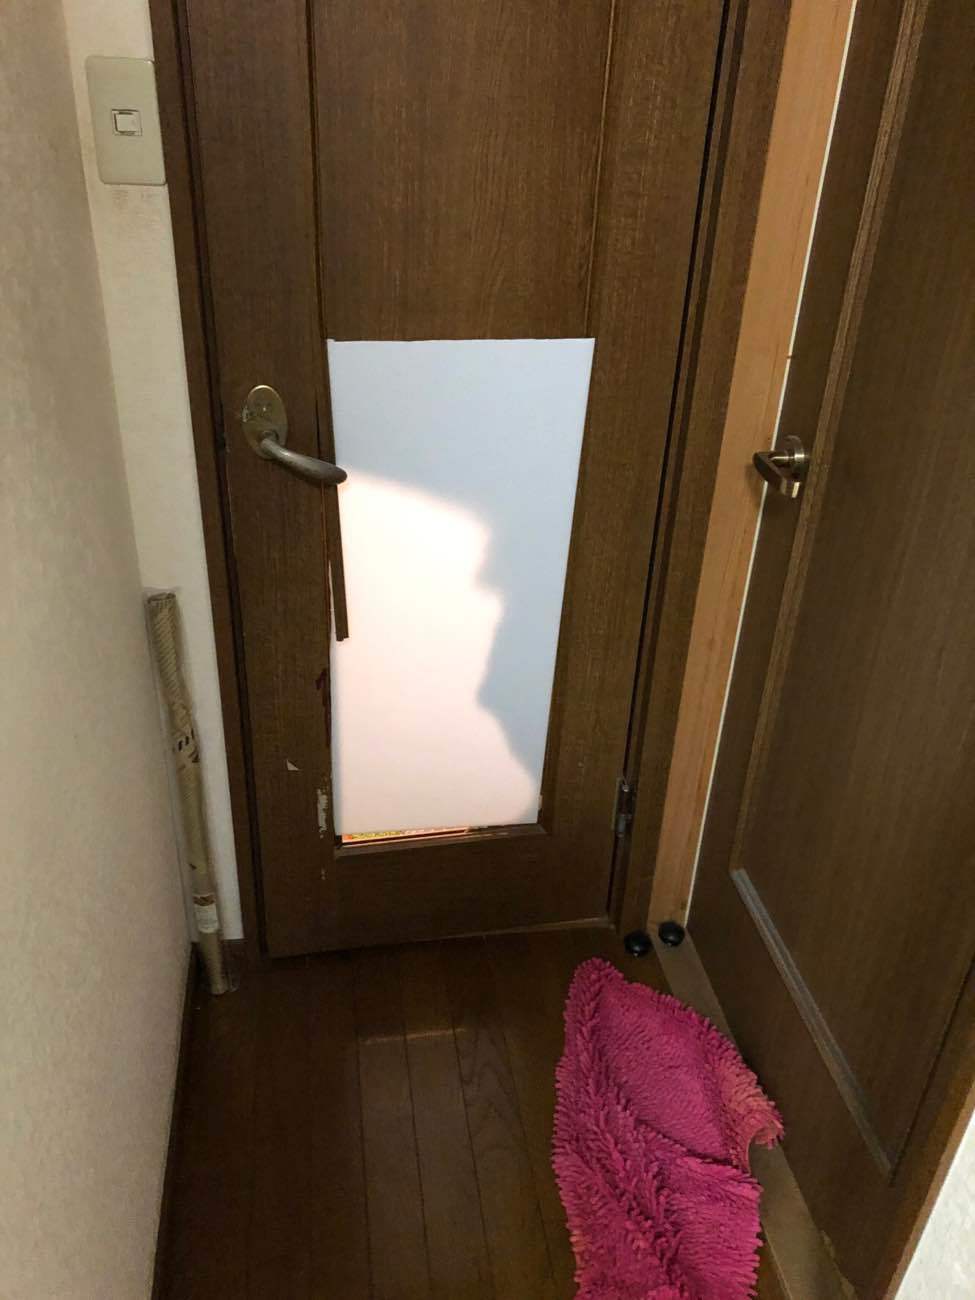 八尾市の一戸建てでトイレのドアを新しく付け替えました。